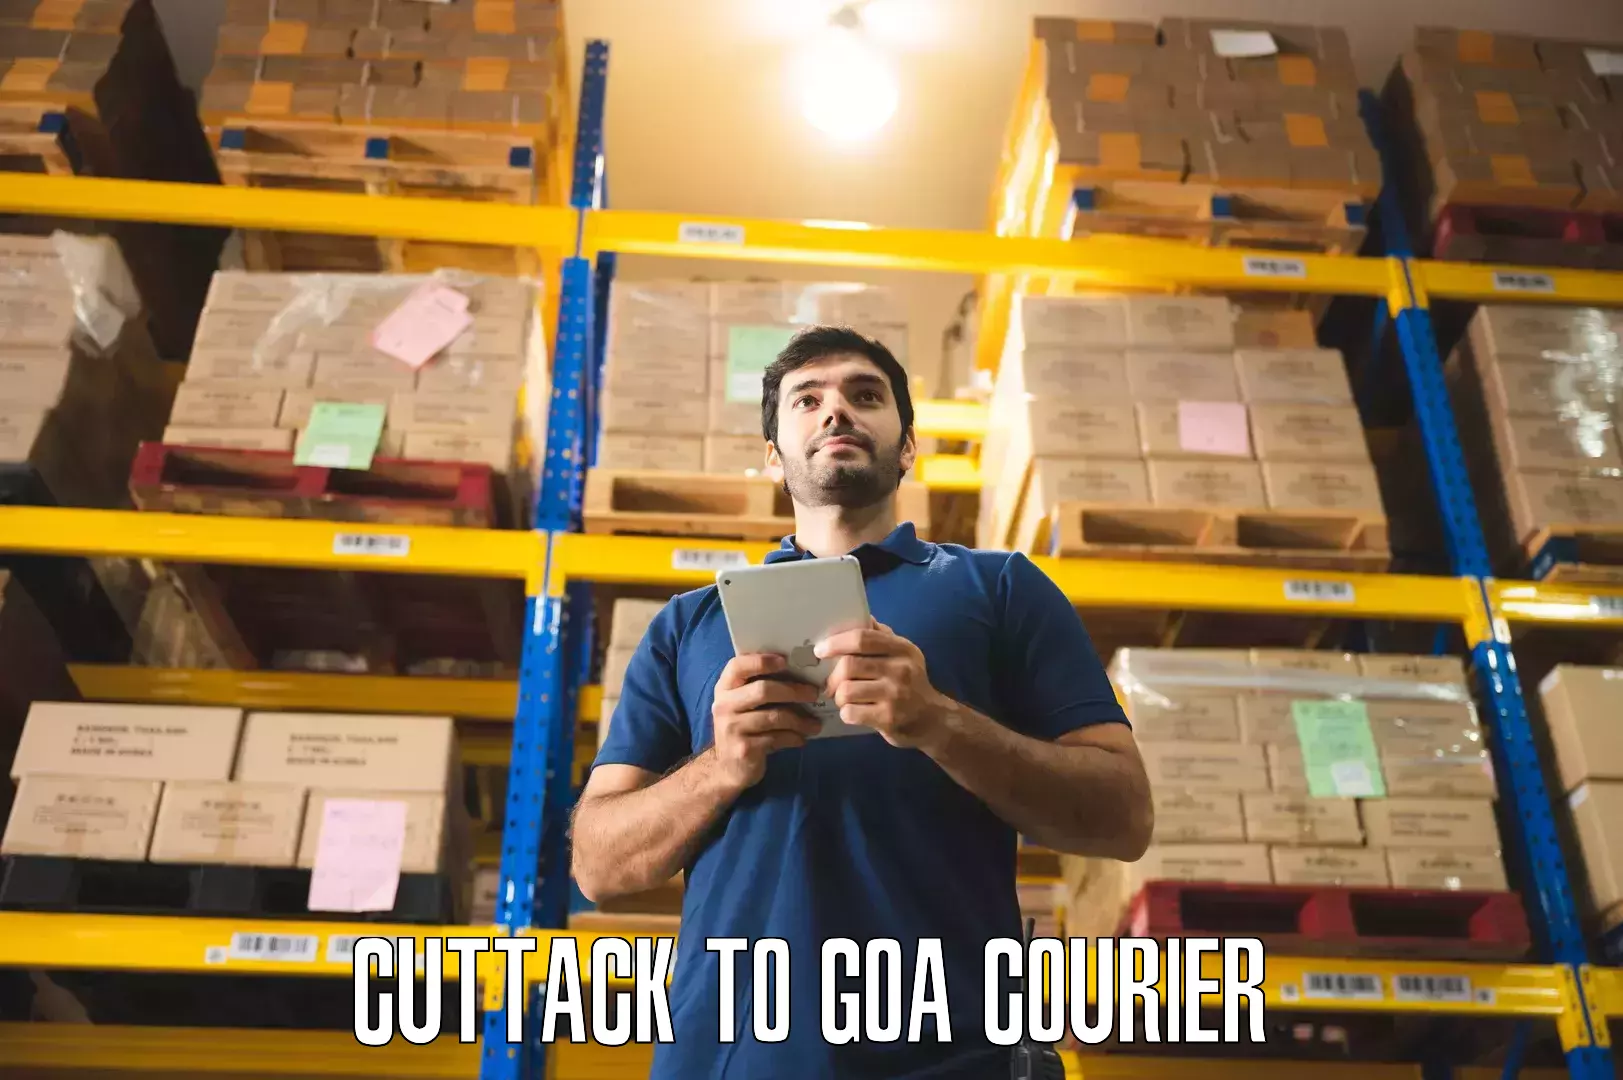 Furniture transport service Cuttack to IIT Goa